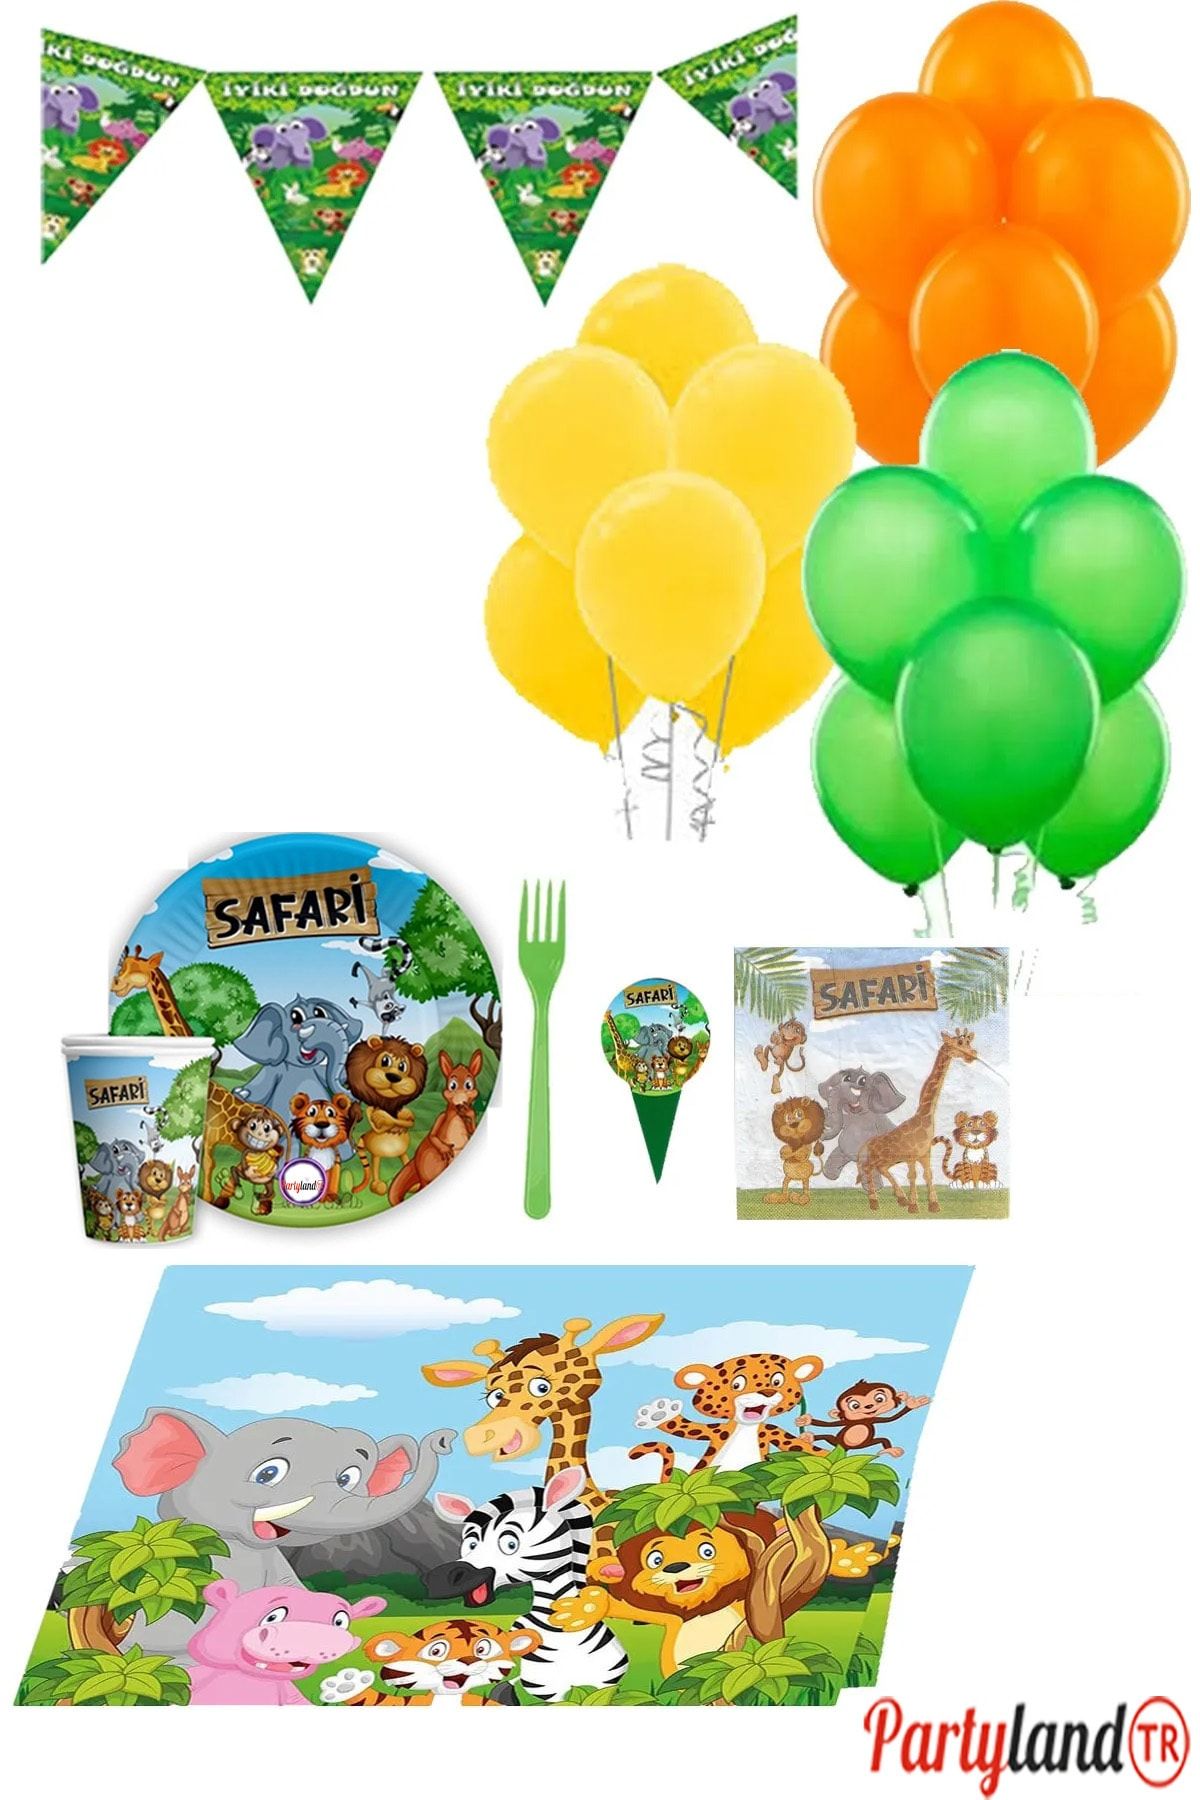 Safari Partylandtr Temalı 8 Kişilik Doğum Günü Parti Seti